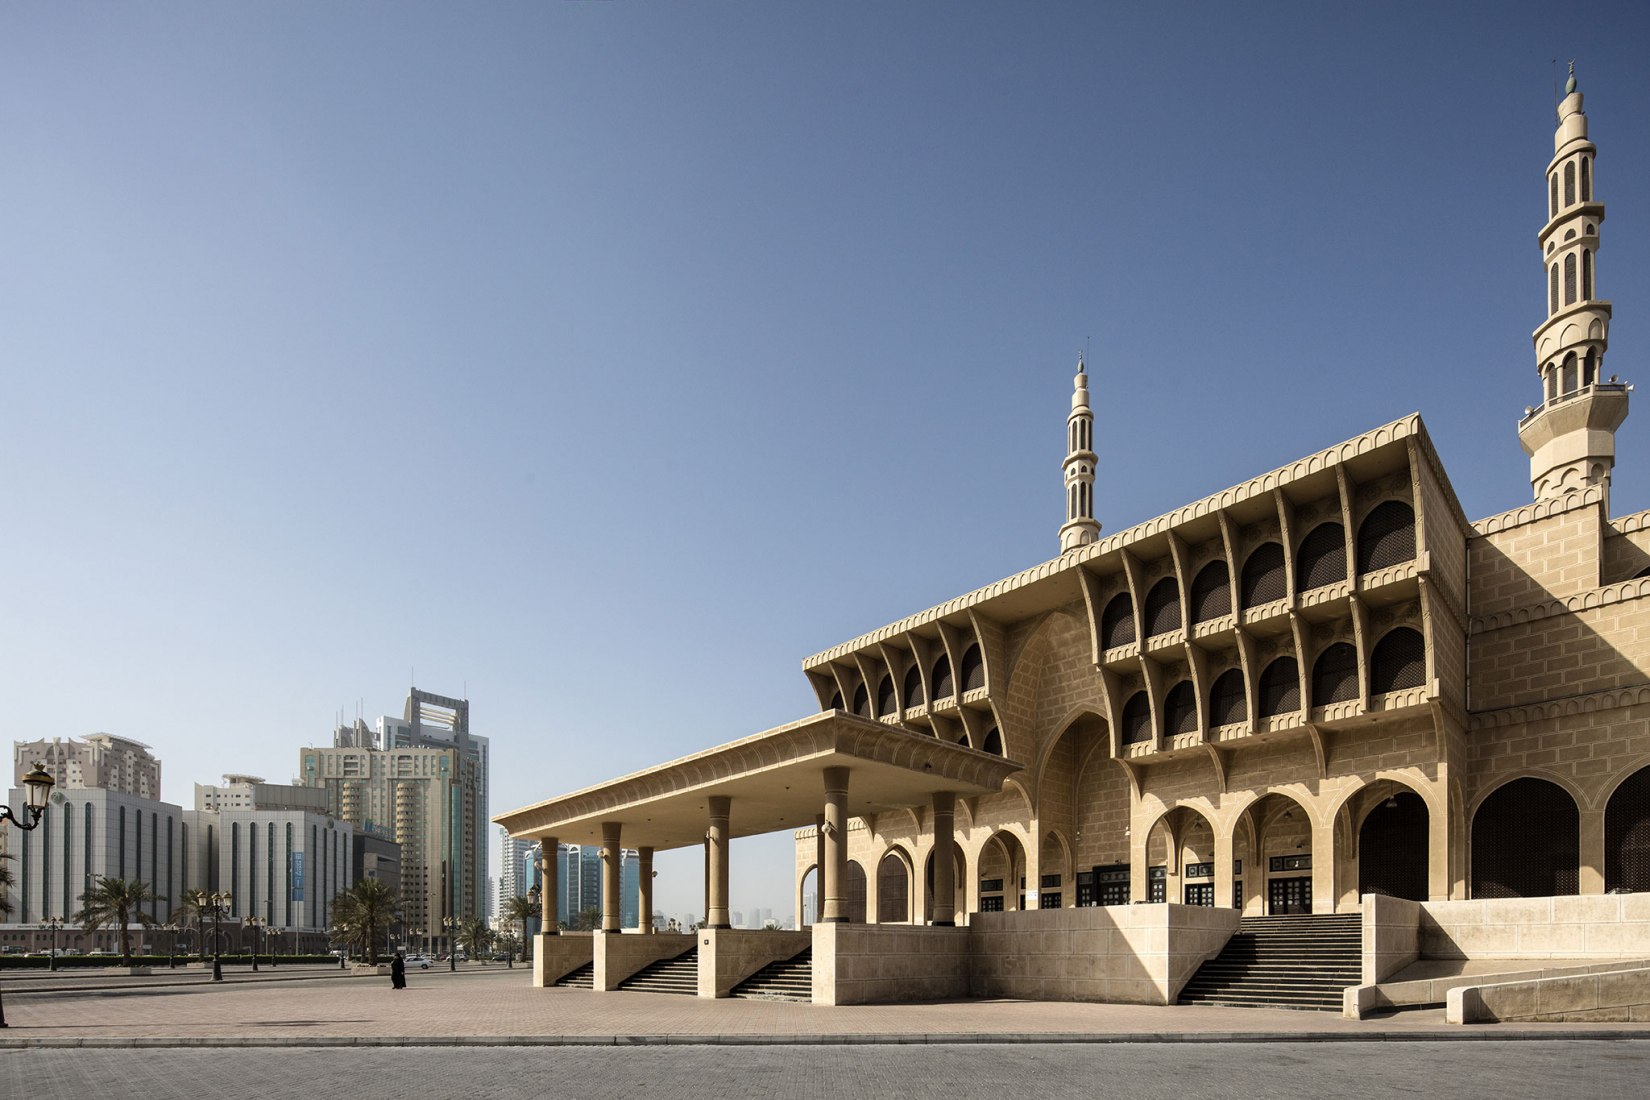 King Faisal Mosque, Rey Abdul Aziz Street, Sharjah, Oficina de Ingeniería Técnica y Arquitectónica y Consultoría, 1987. Trienal de Arquitectura de Sharjah: la primera plataforma internacional de arquitectura en la región de MENASA. Fotografía de Ieva Saudargaite.